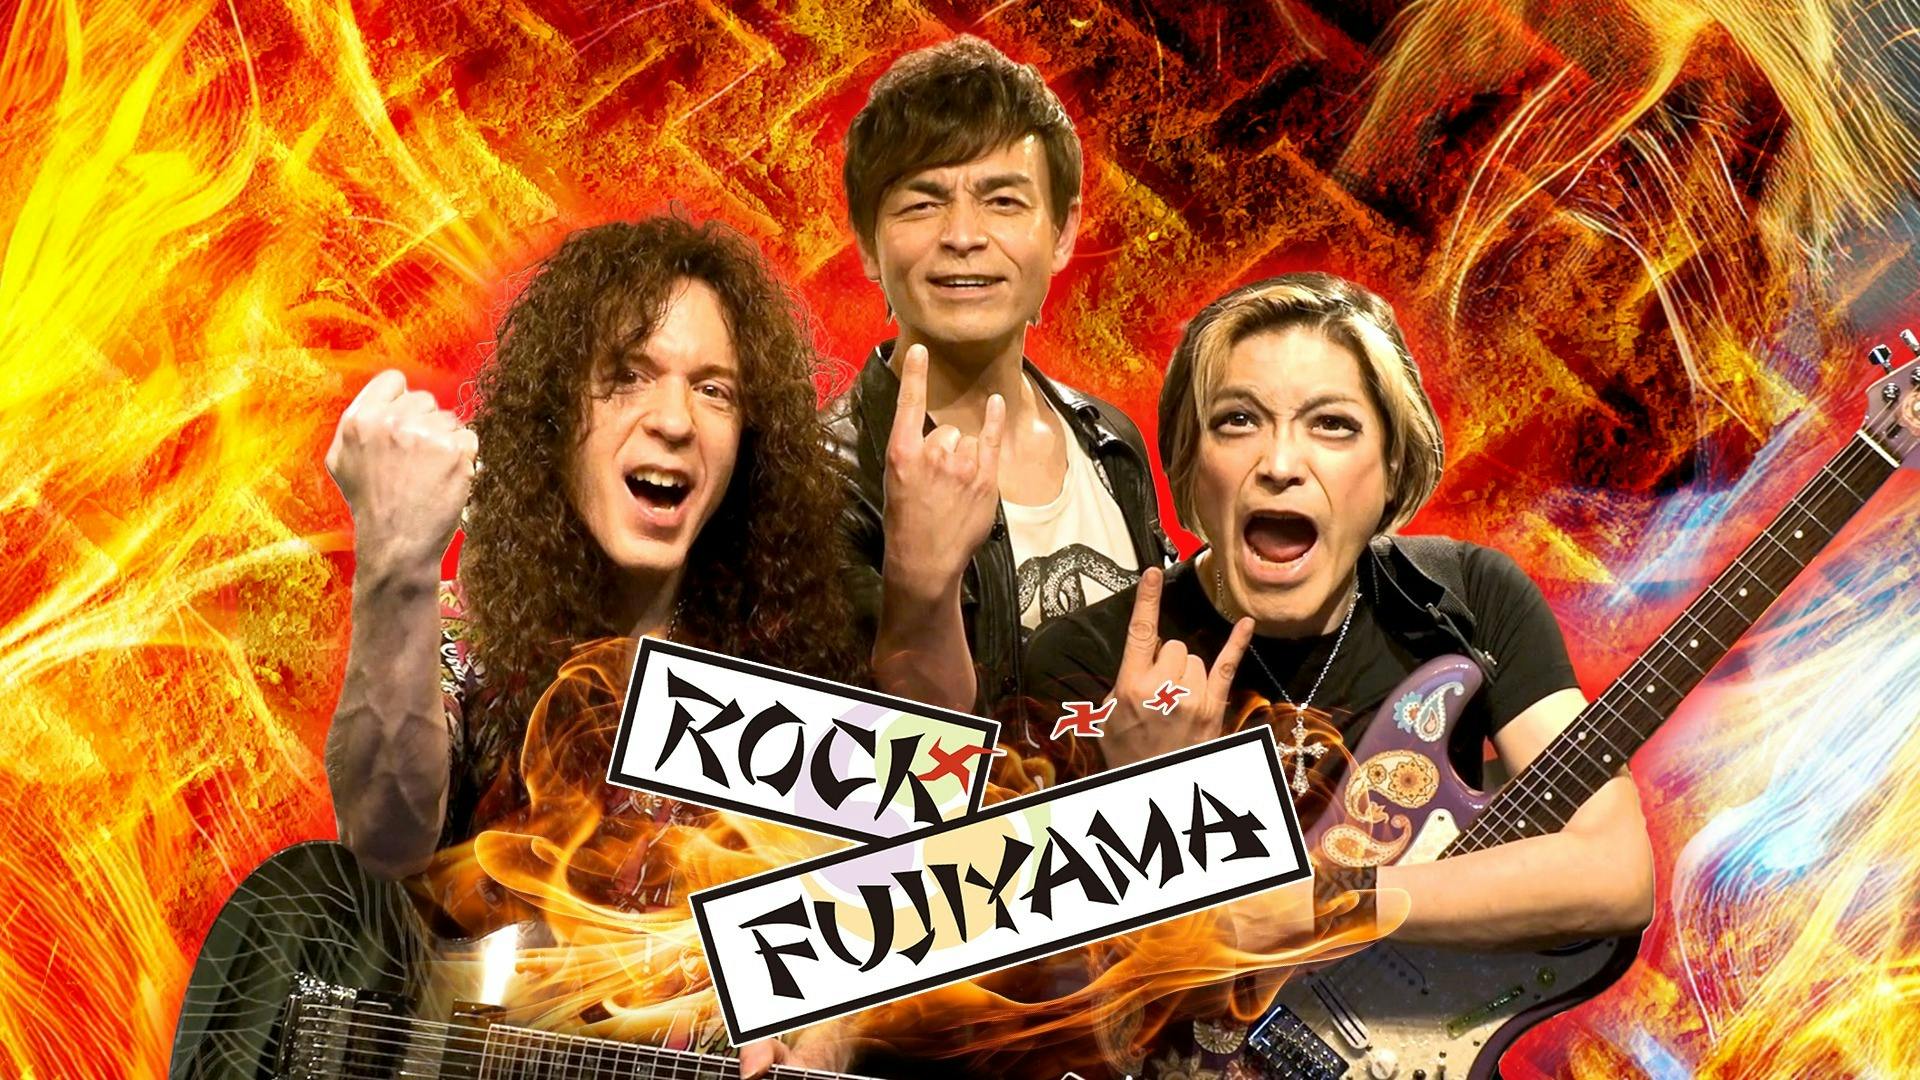 ROCK FUJIYAMA CLUB - ROCK FUJIYAMA CLUB - DMMオンラインサロン